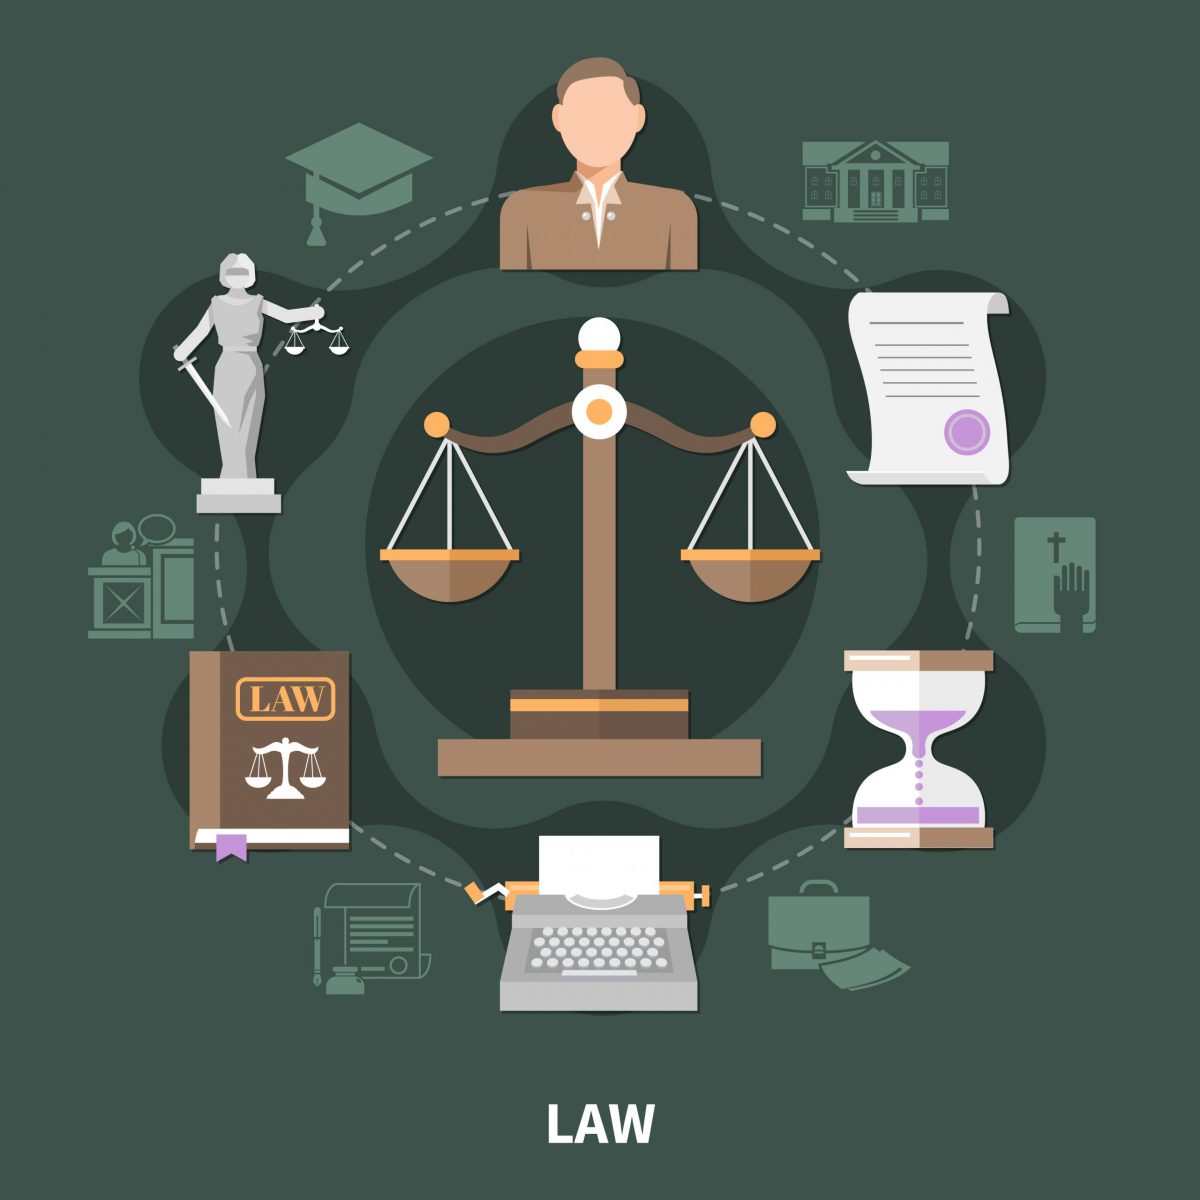 Meios Adequados de Solução de Conflitos - Direito Processual Civil e  Direito Civil